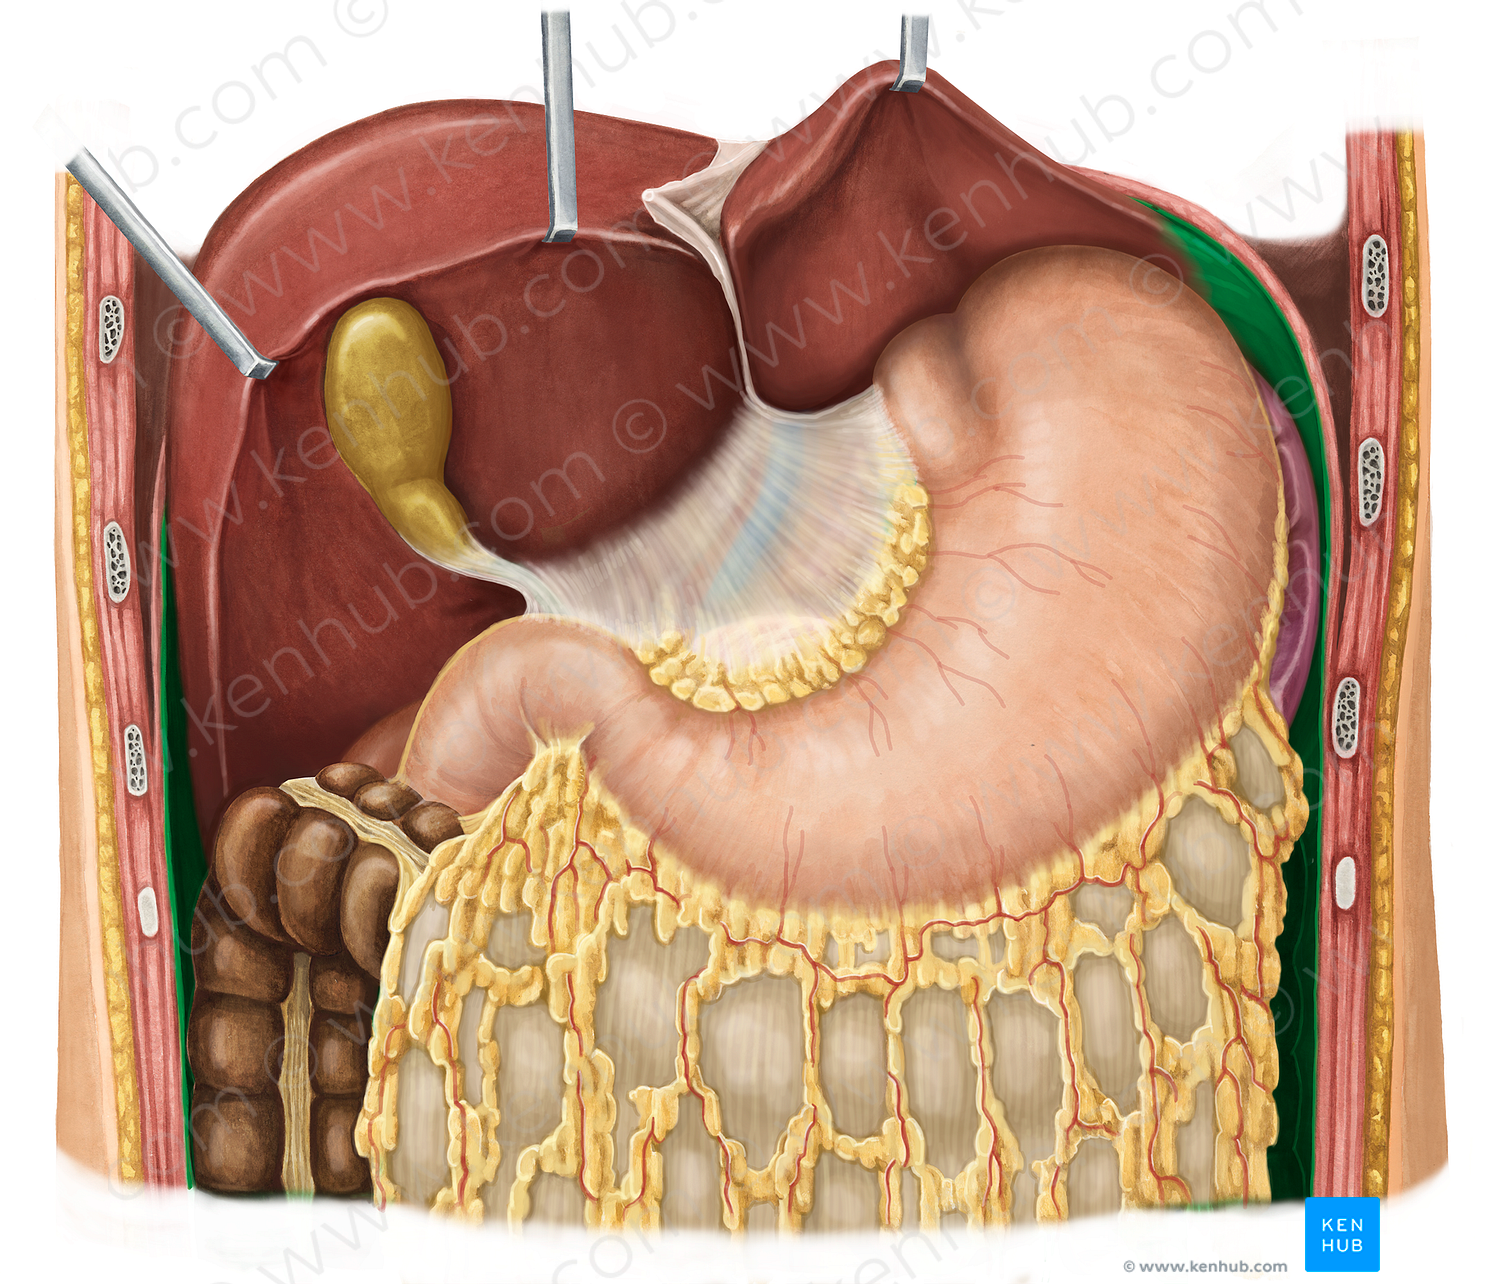 Parietal peritoneum (#7880)